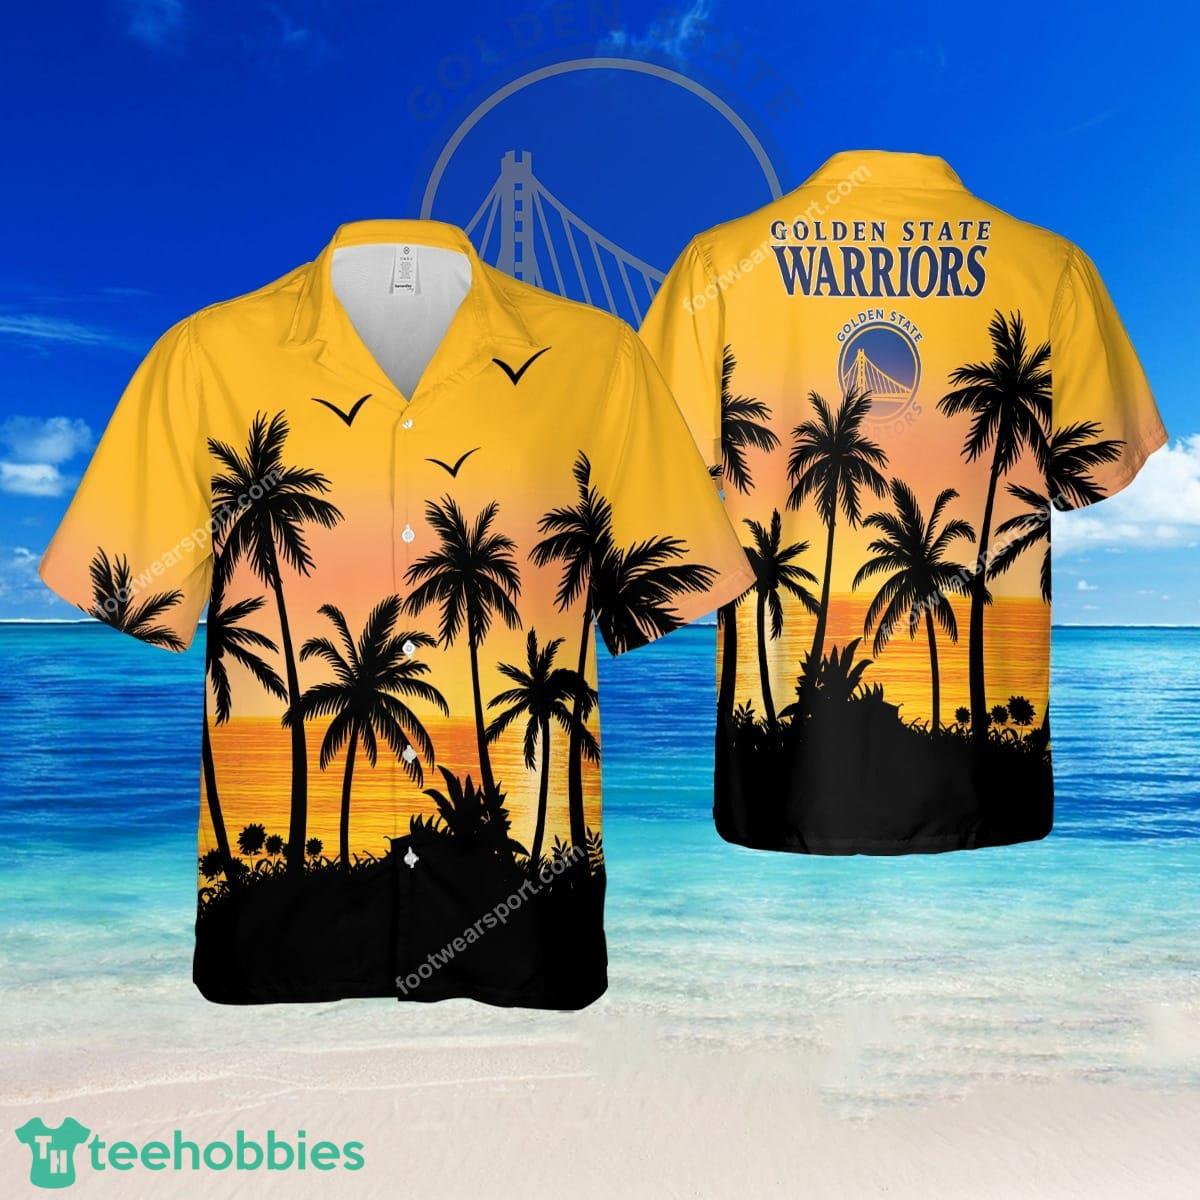 NBA Golden State Warriors Floral Brand All Over Print Hawaiian Shirt Gift For Fans - NBA Golden State Warriors Floral Brand All Over Print Hawaiian Shirt Gift For Fans